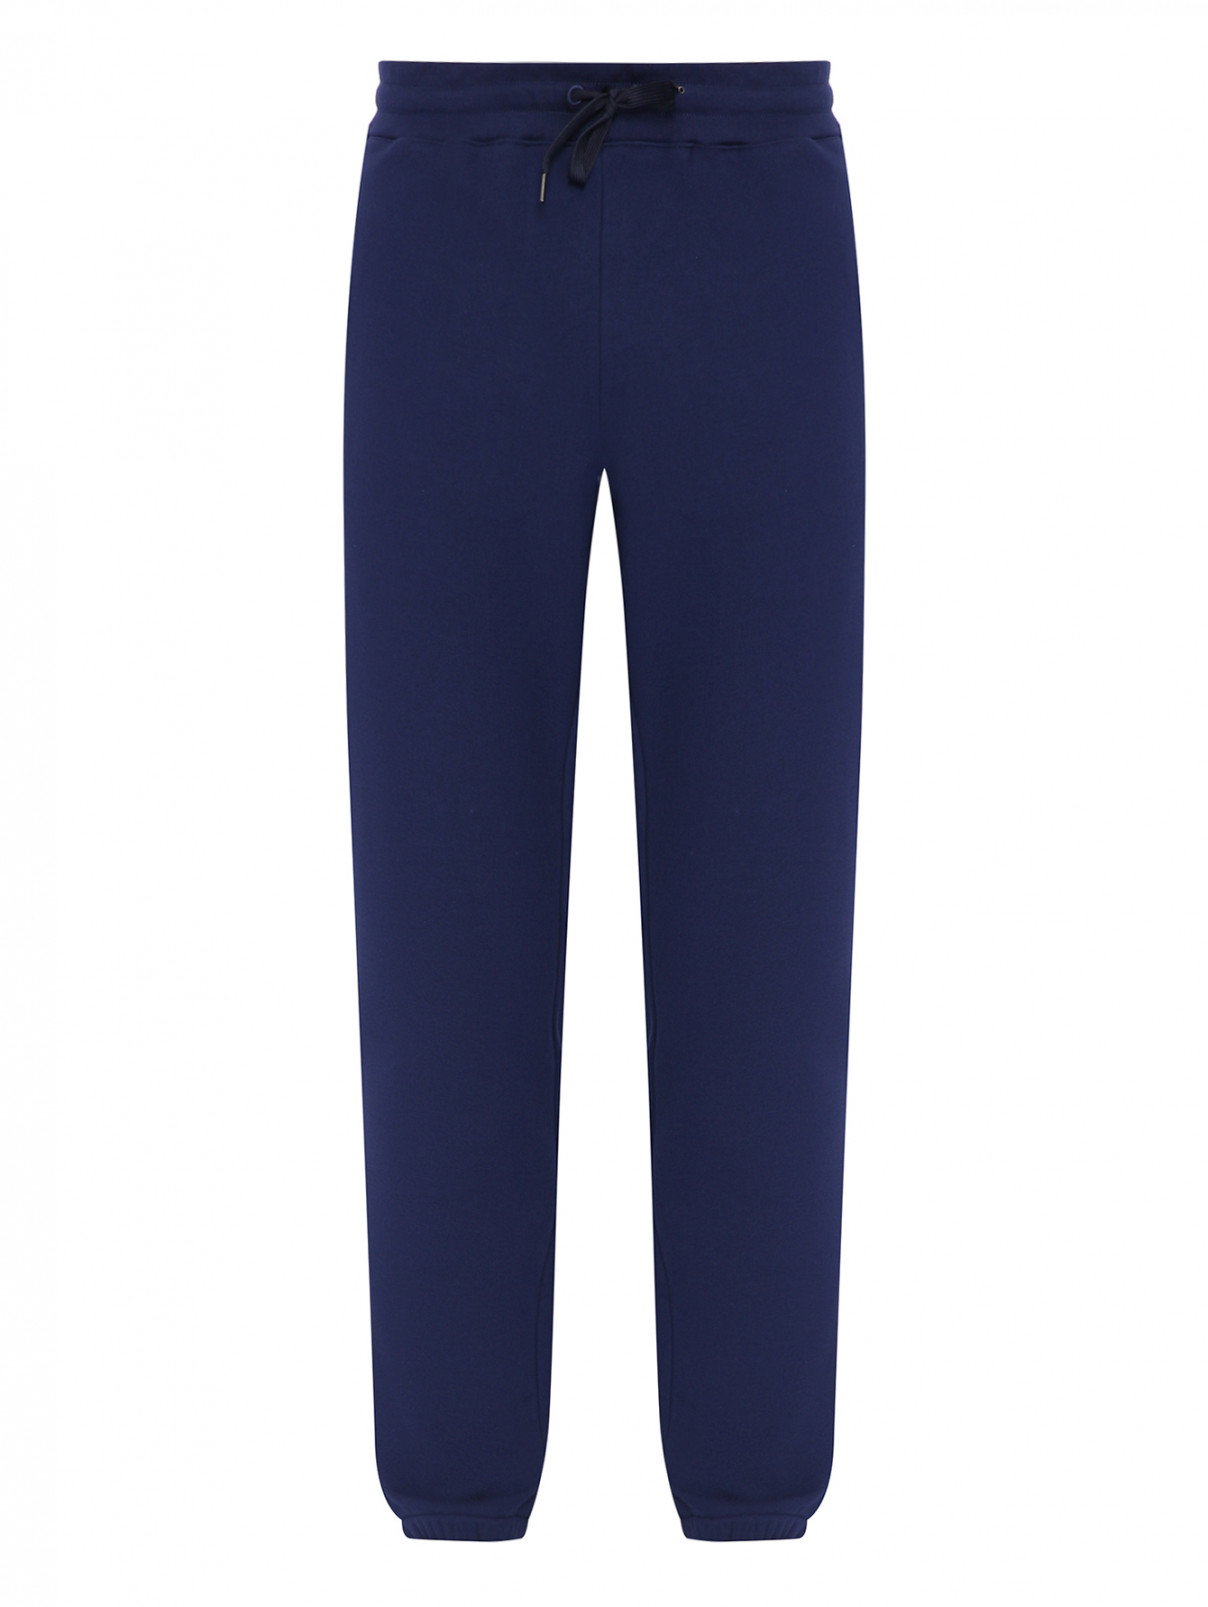 Трикотажные брюки из хлопка на резинке Paul Smith  –  Общий вид  – Цвет:  Синий